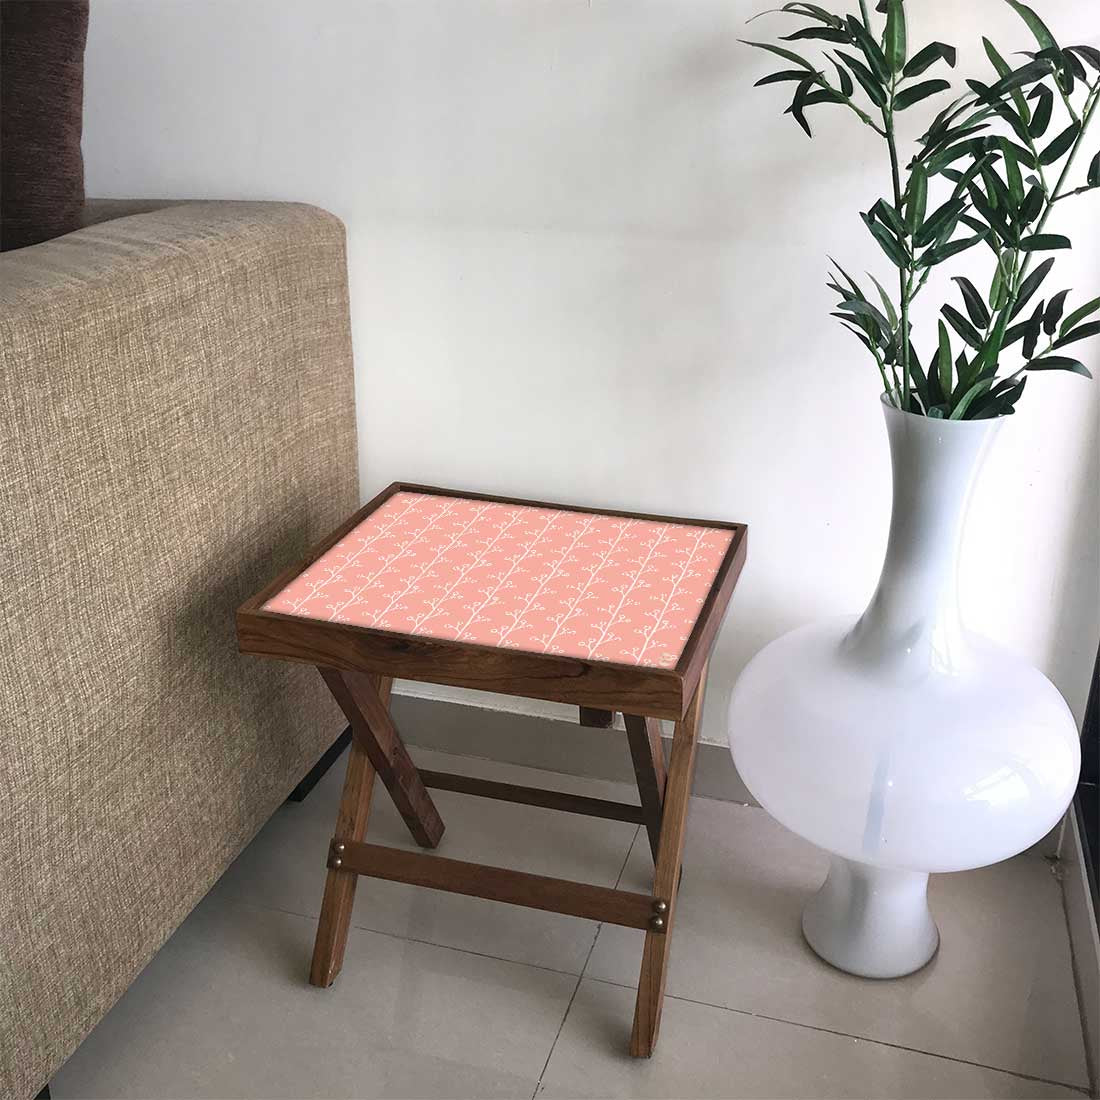 Folding Side Table - Teak Wood -Peach Patten